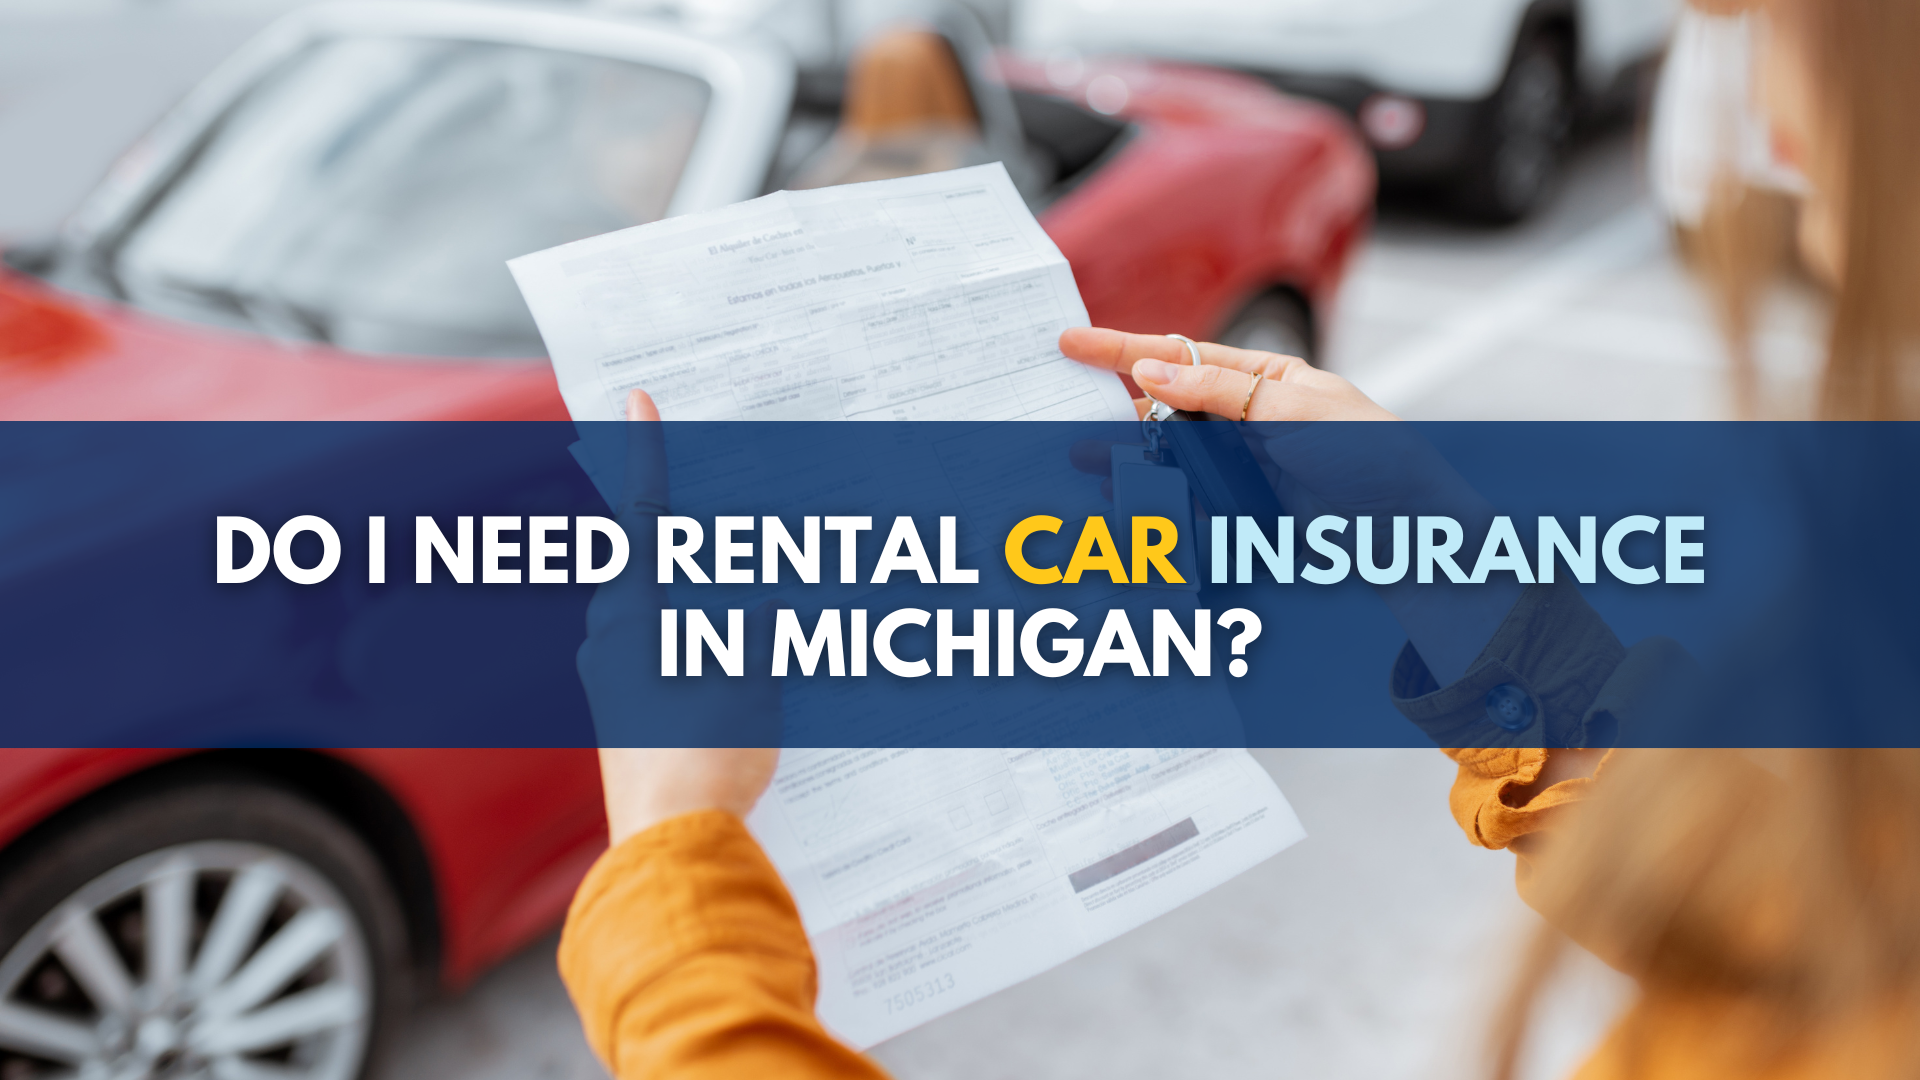 Rental Car Insurance 101: Should I Buy It, Is It Worth It?